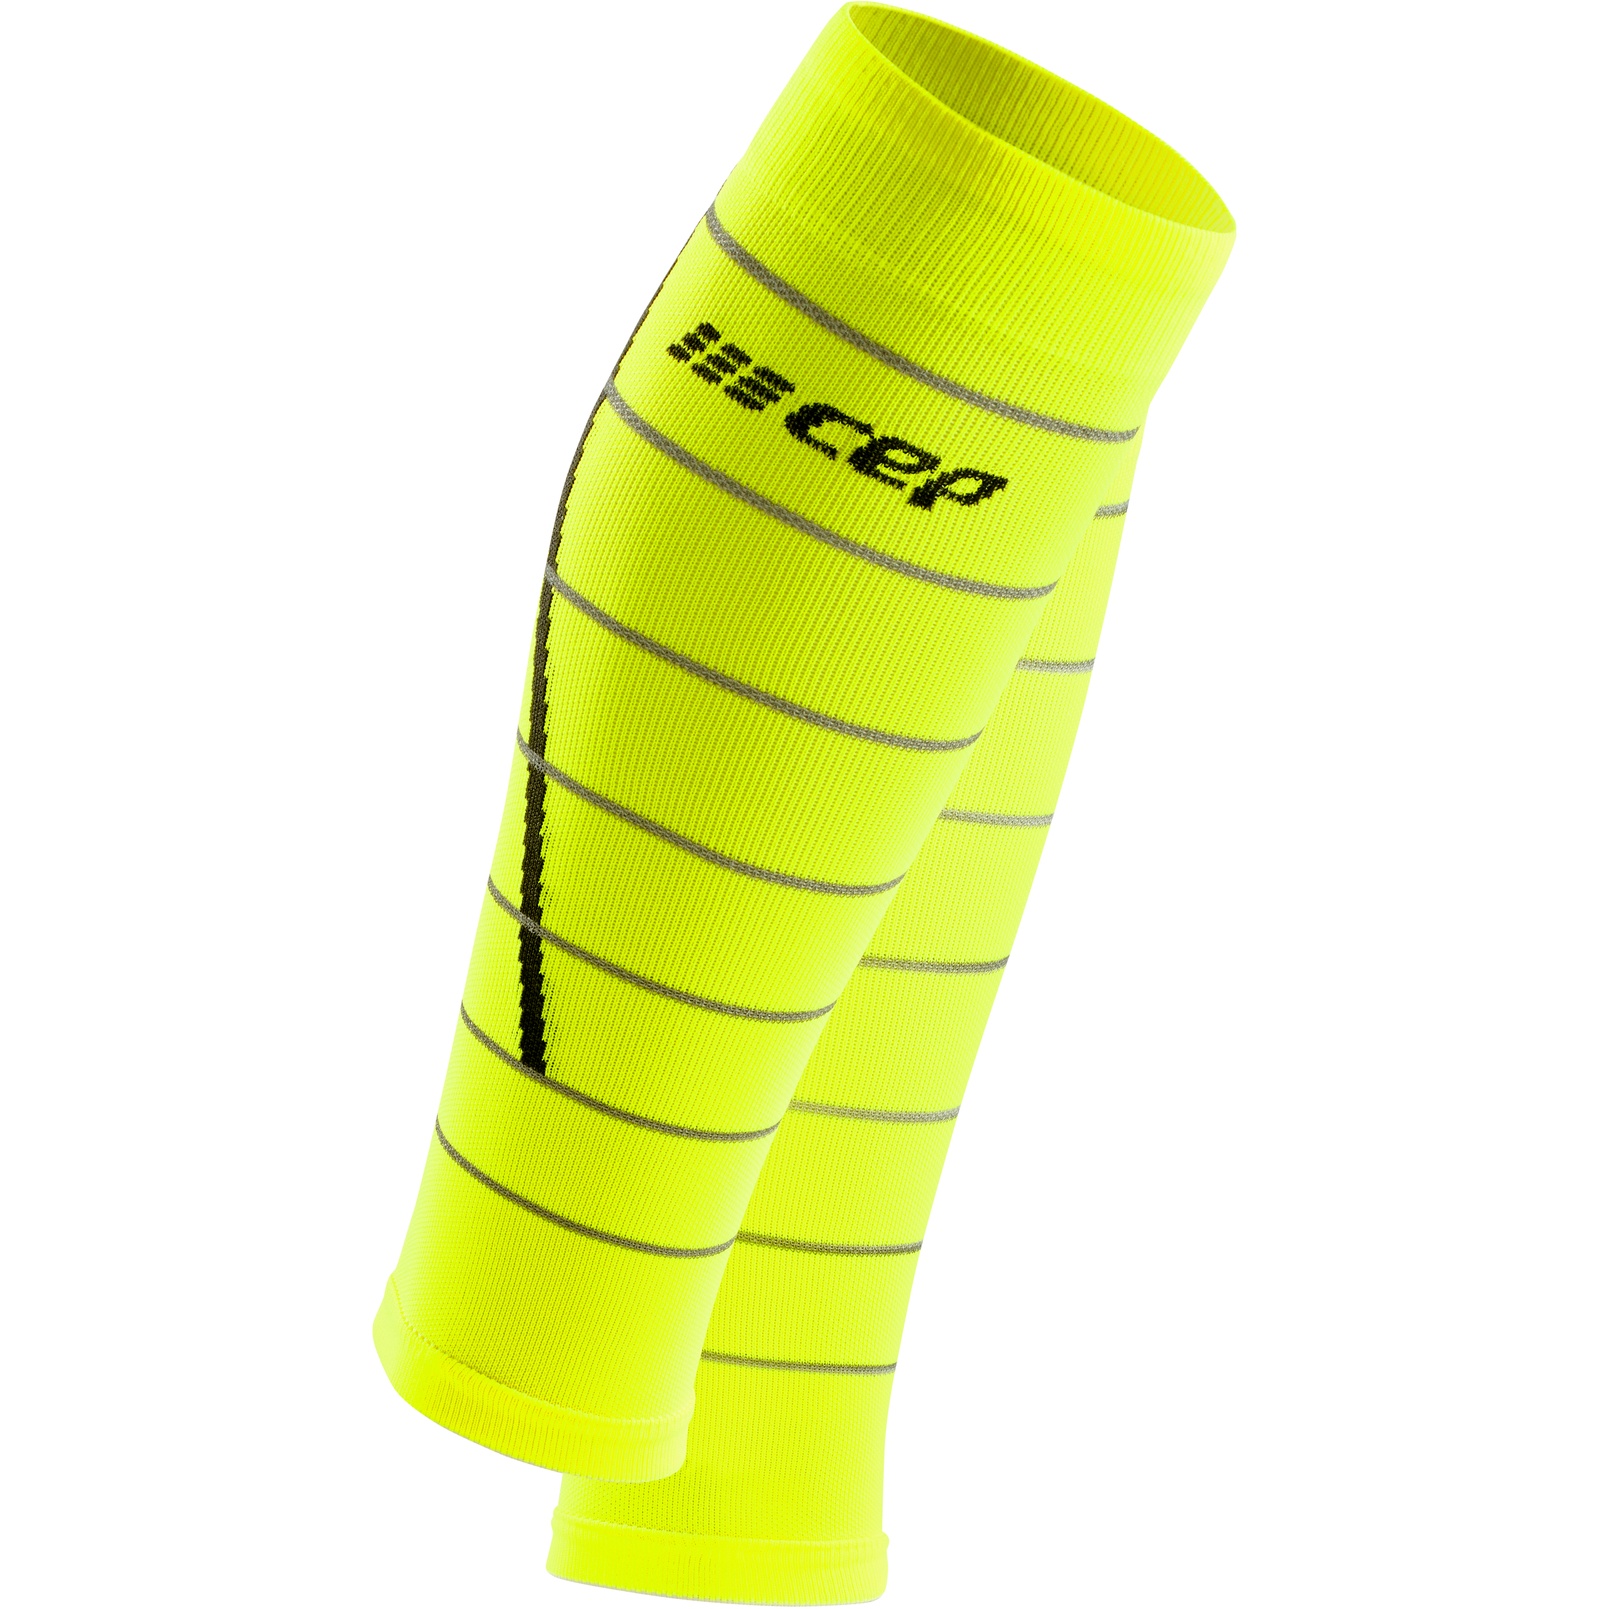 Productfoto van CEP Reflective Kuit-Compressor Heren - neon yellow